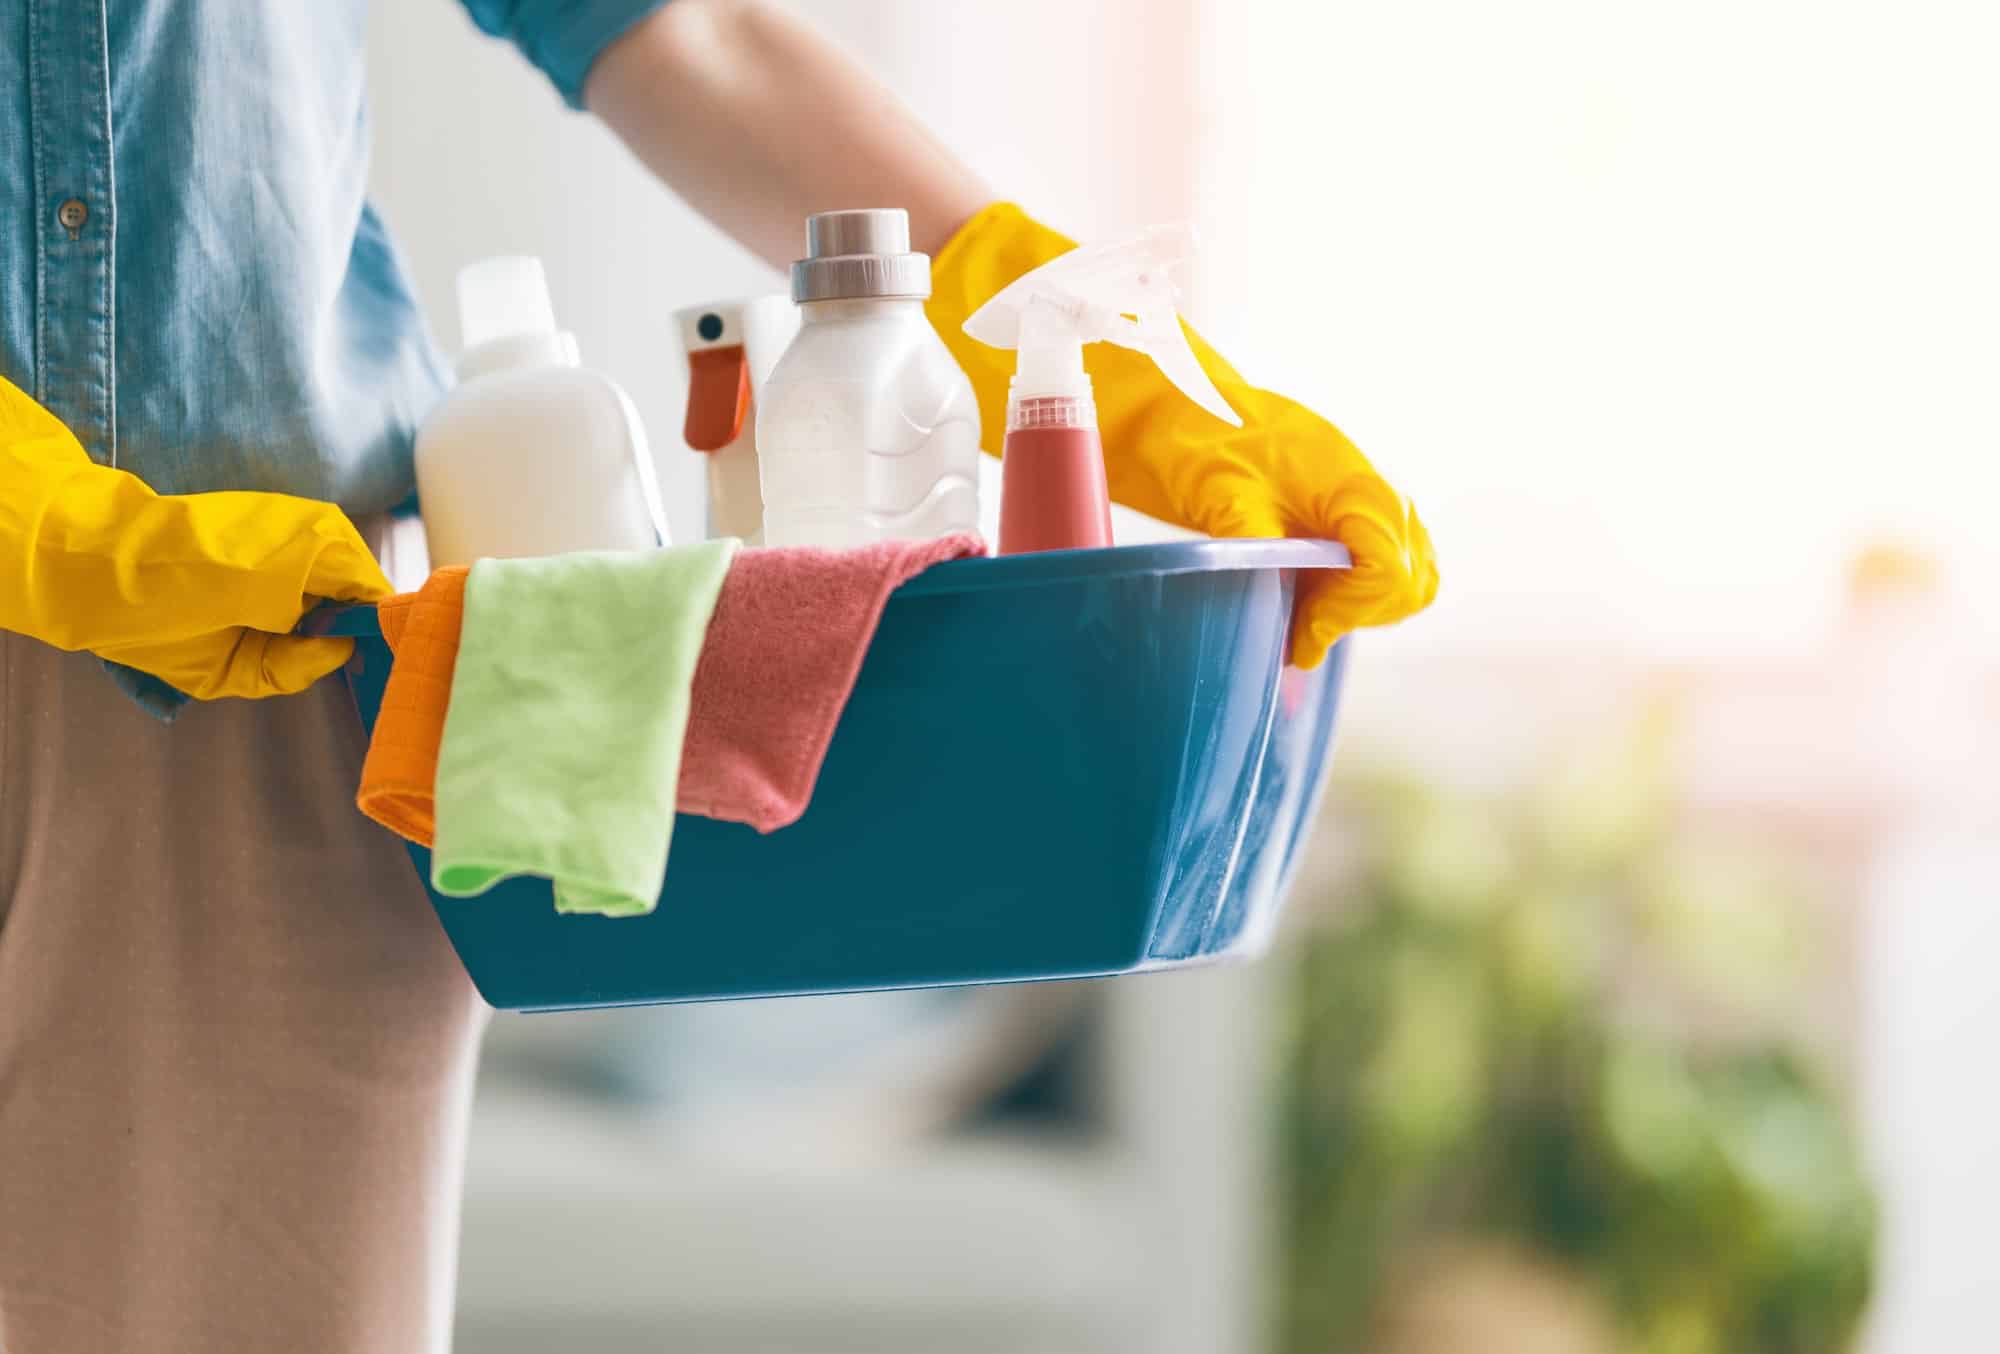 Les 4 choses que l'on oublie toujours de nettoyer à la maison